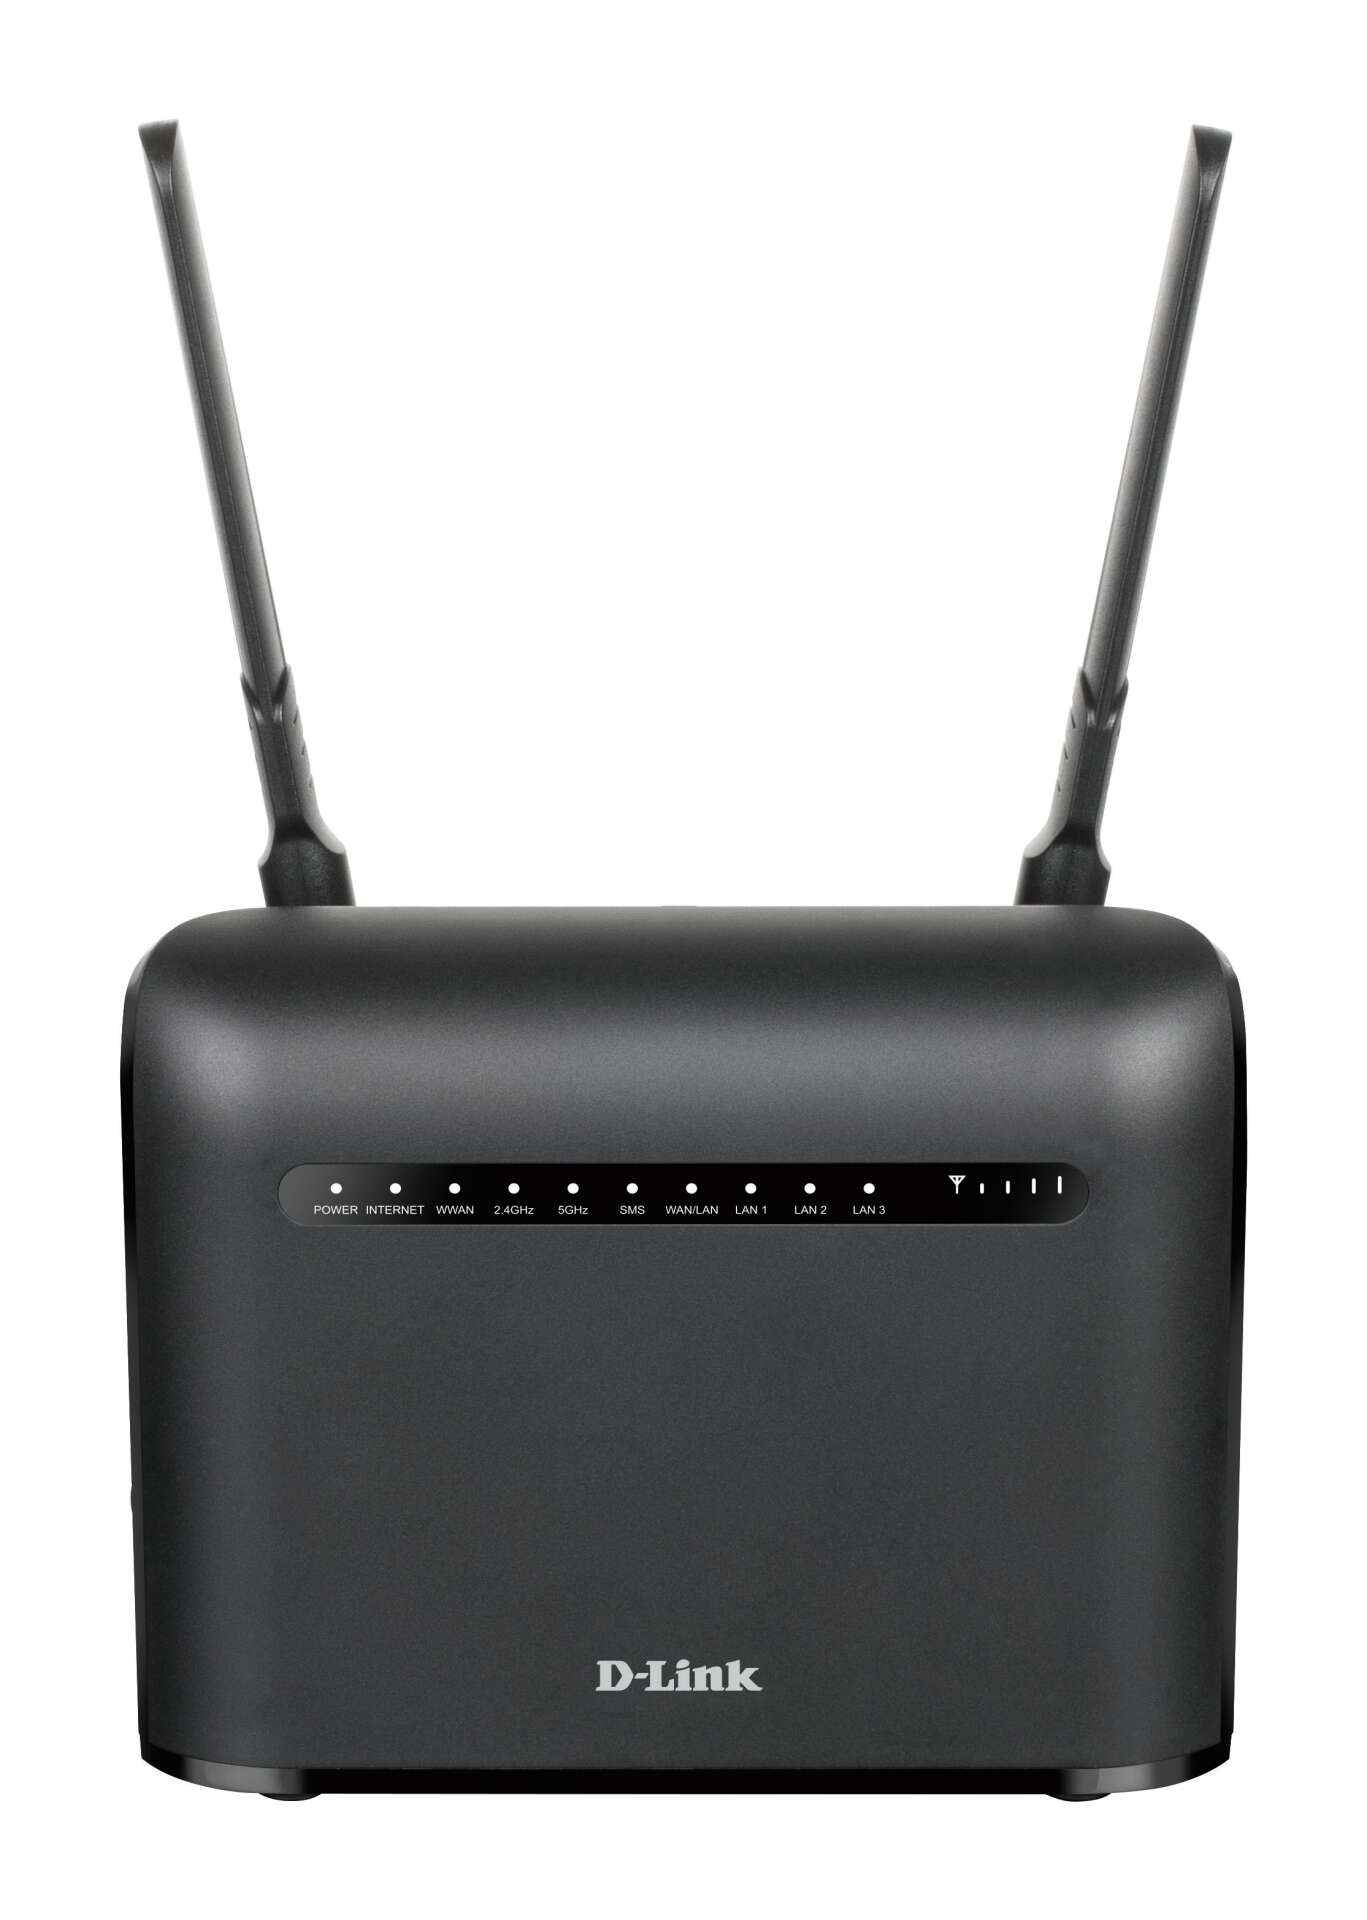 D-link ac1200 1200 mbit/s vezeték nélküli kétsávos router - fekete